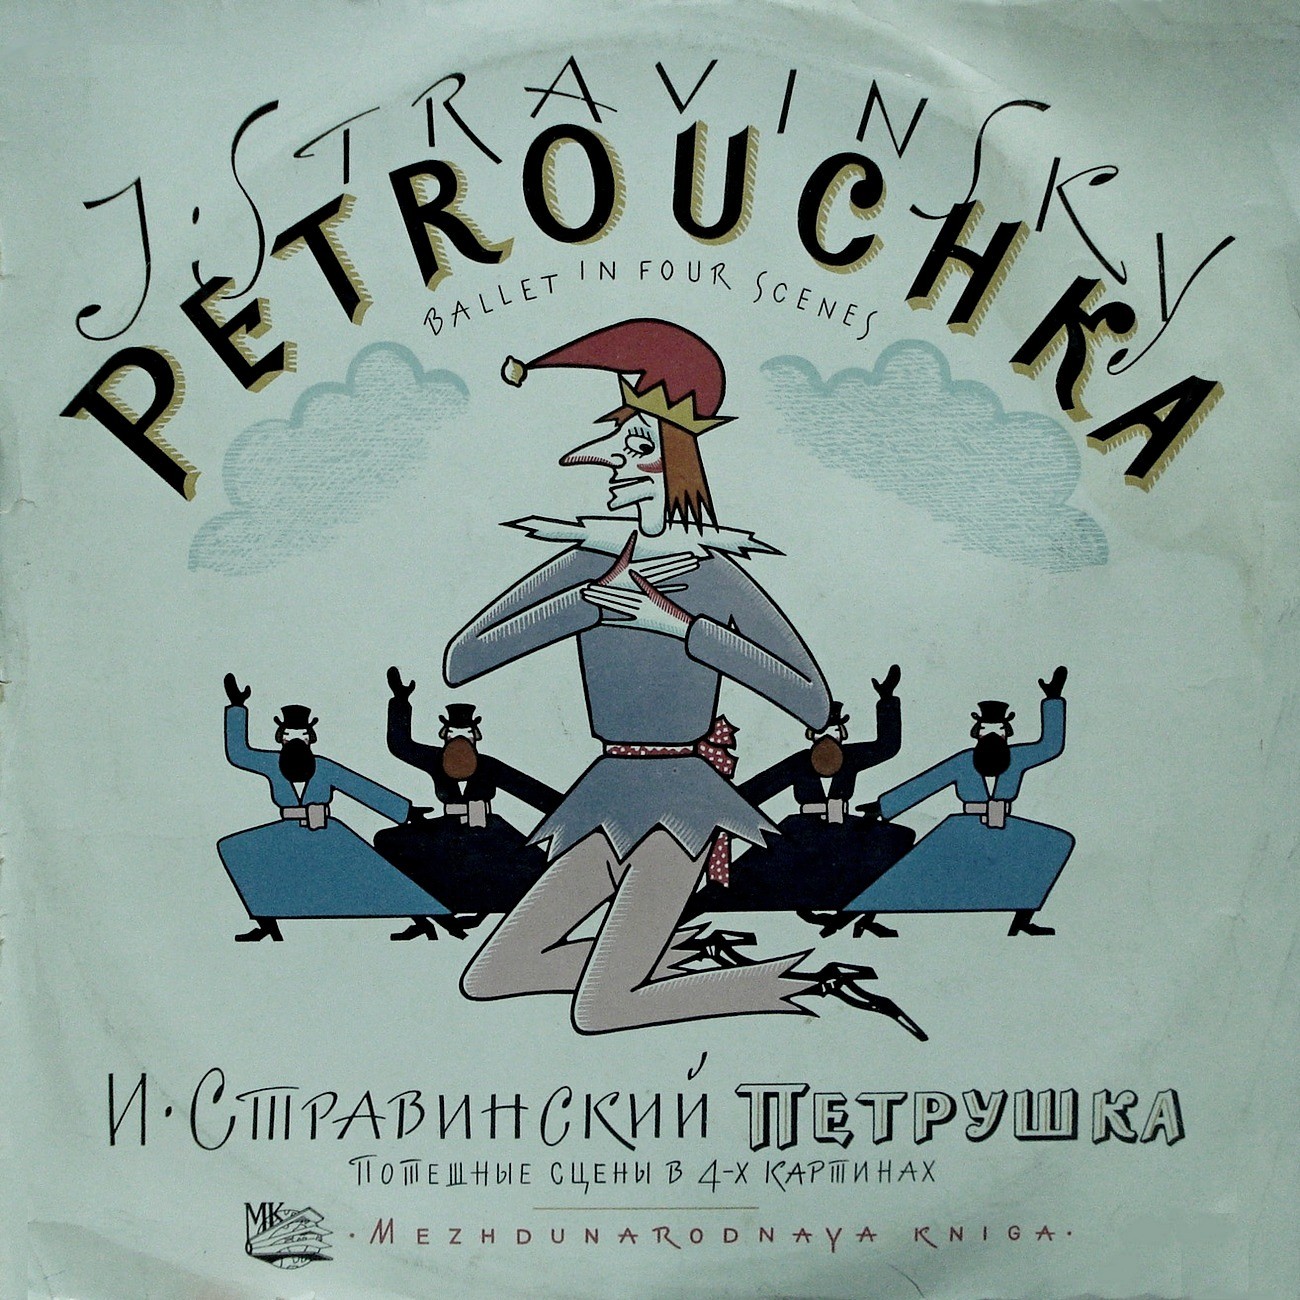 И. СТРАВИНСКИЙ (1882–1971): «Петрушка», потешные сцены в 4-х картинах (К. Иванов)